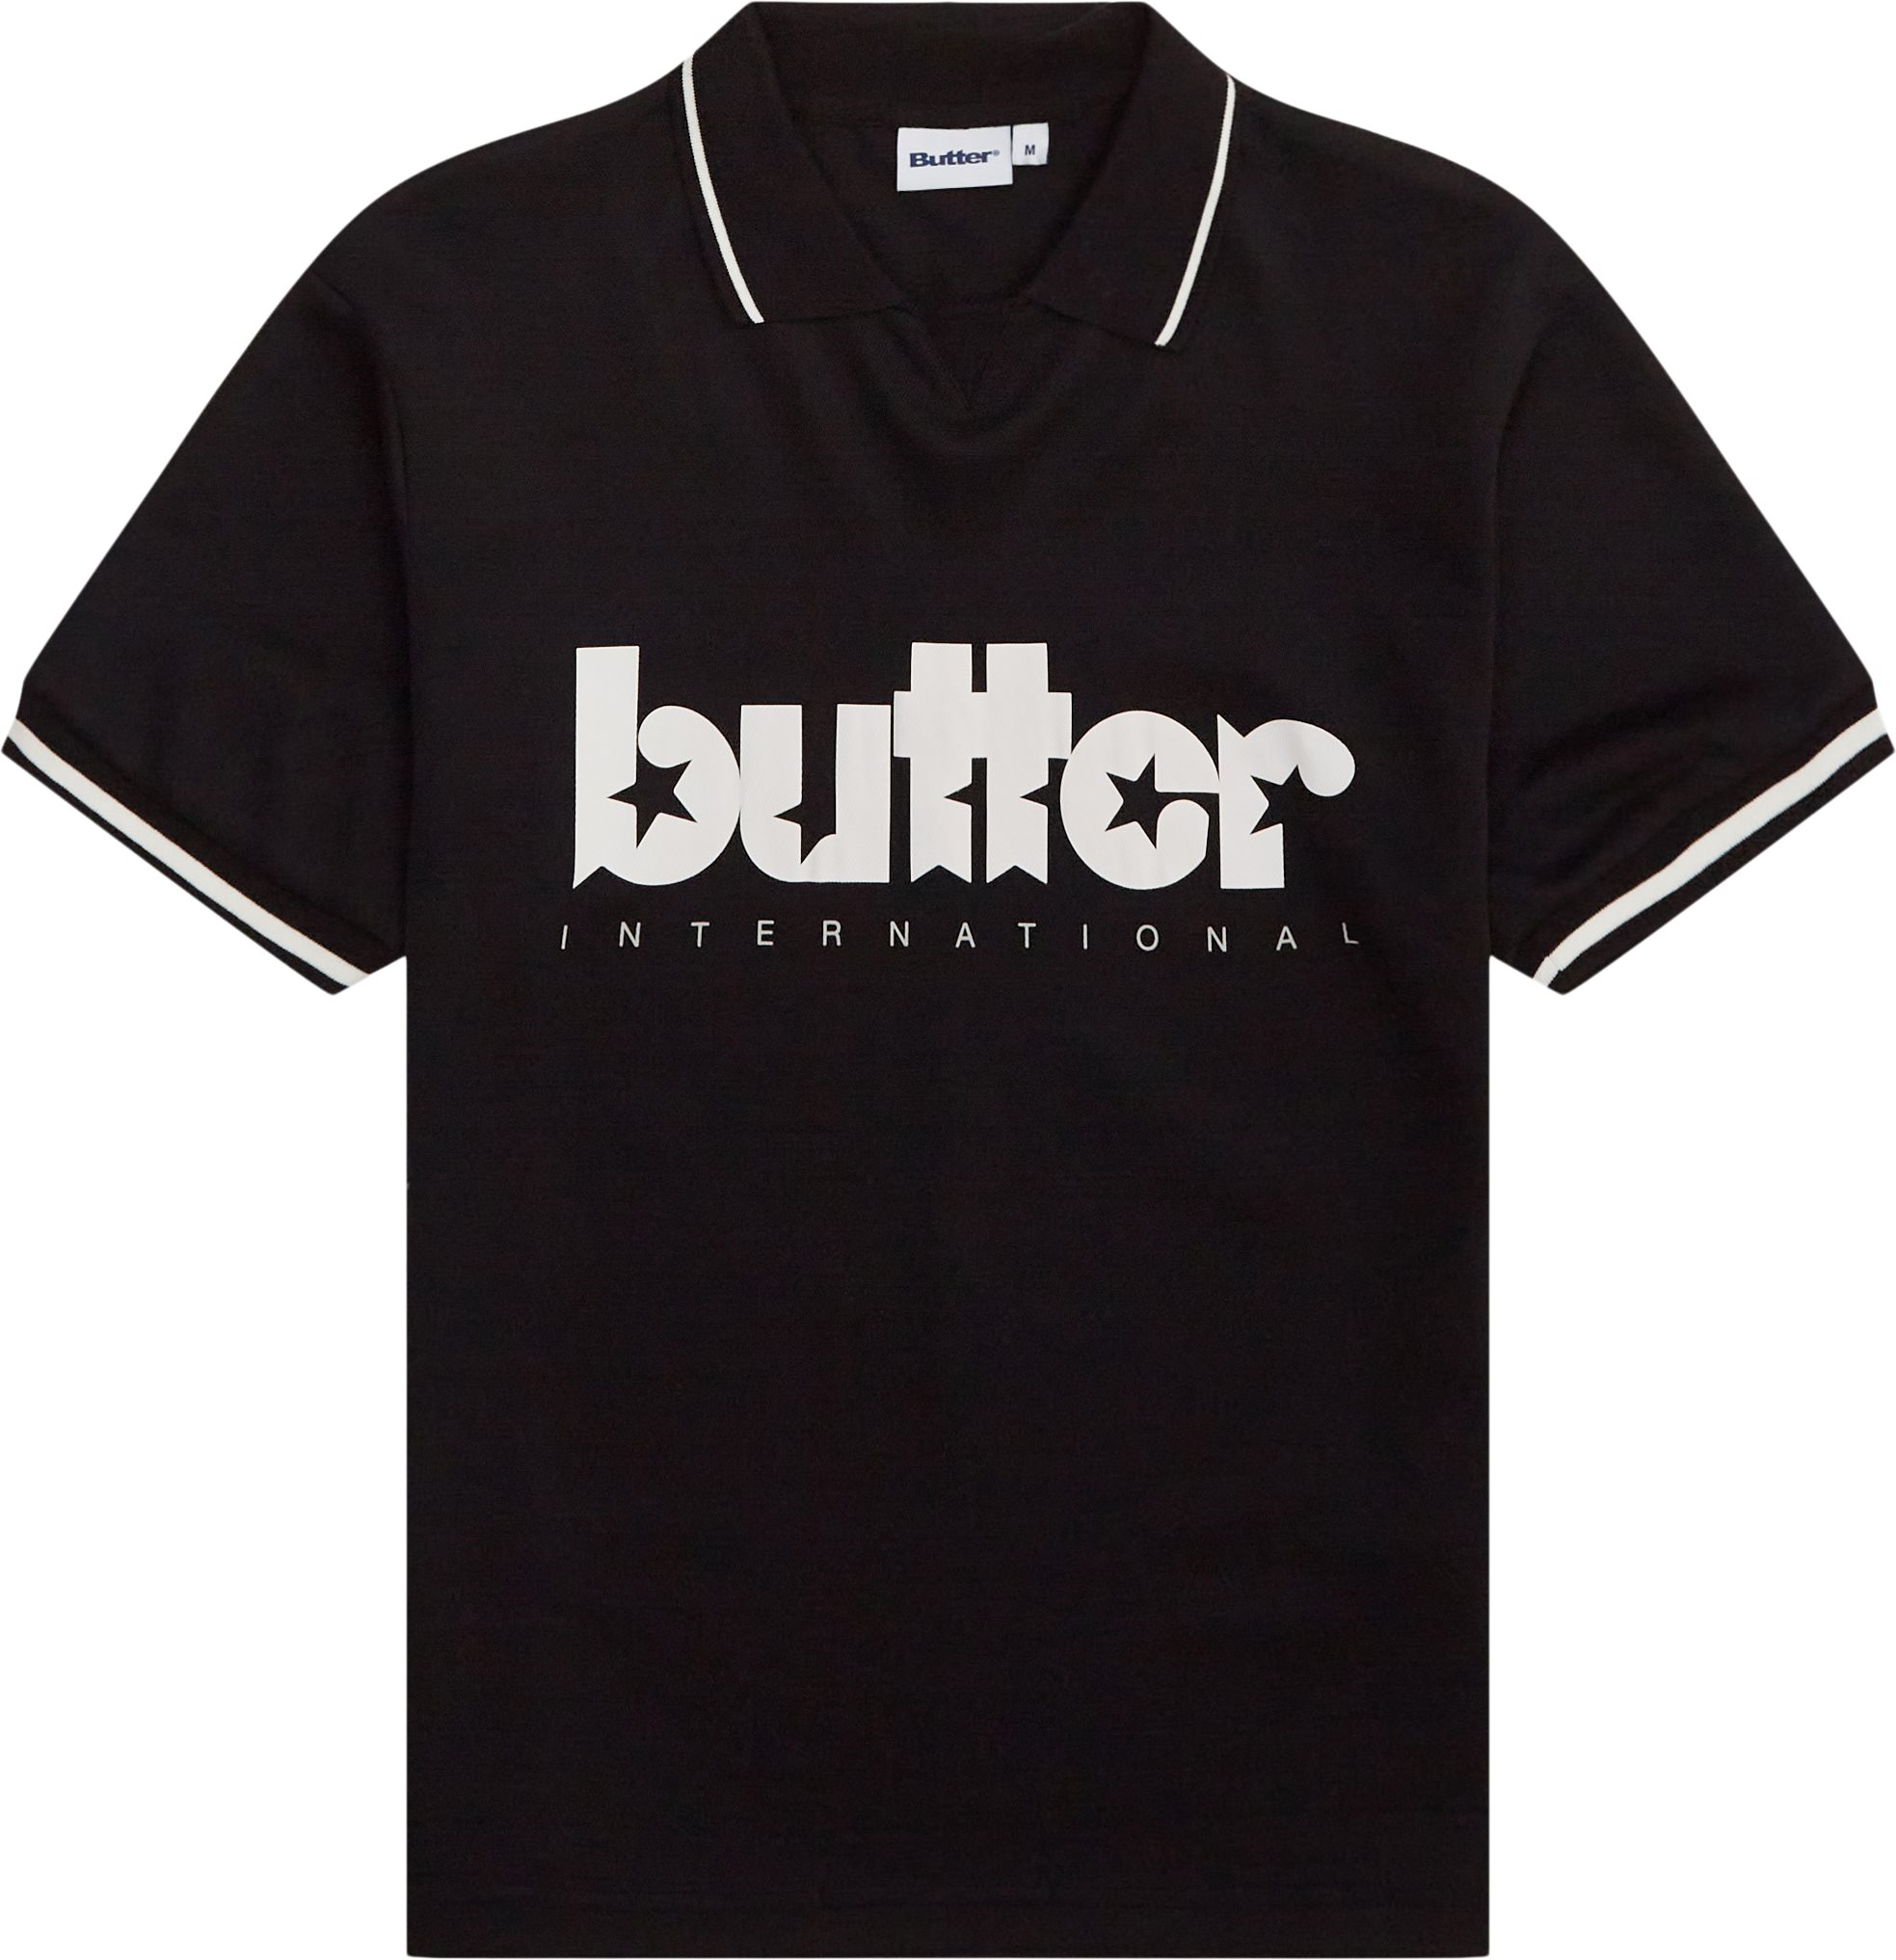 Butter Goods T-shirts STAR JERSEY Sort